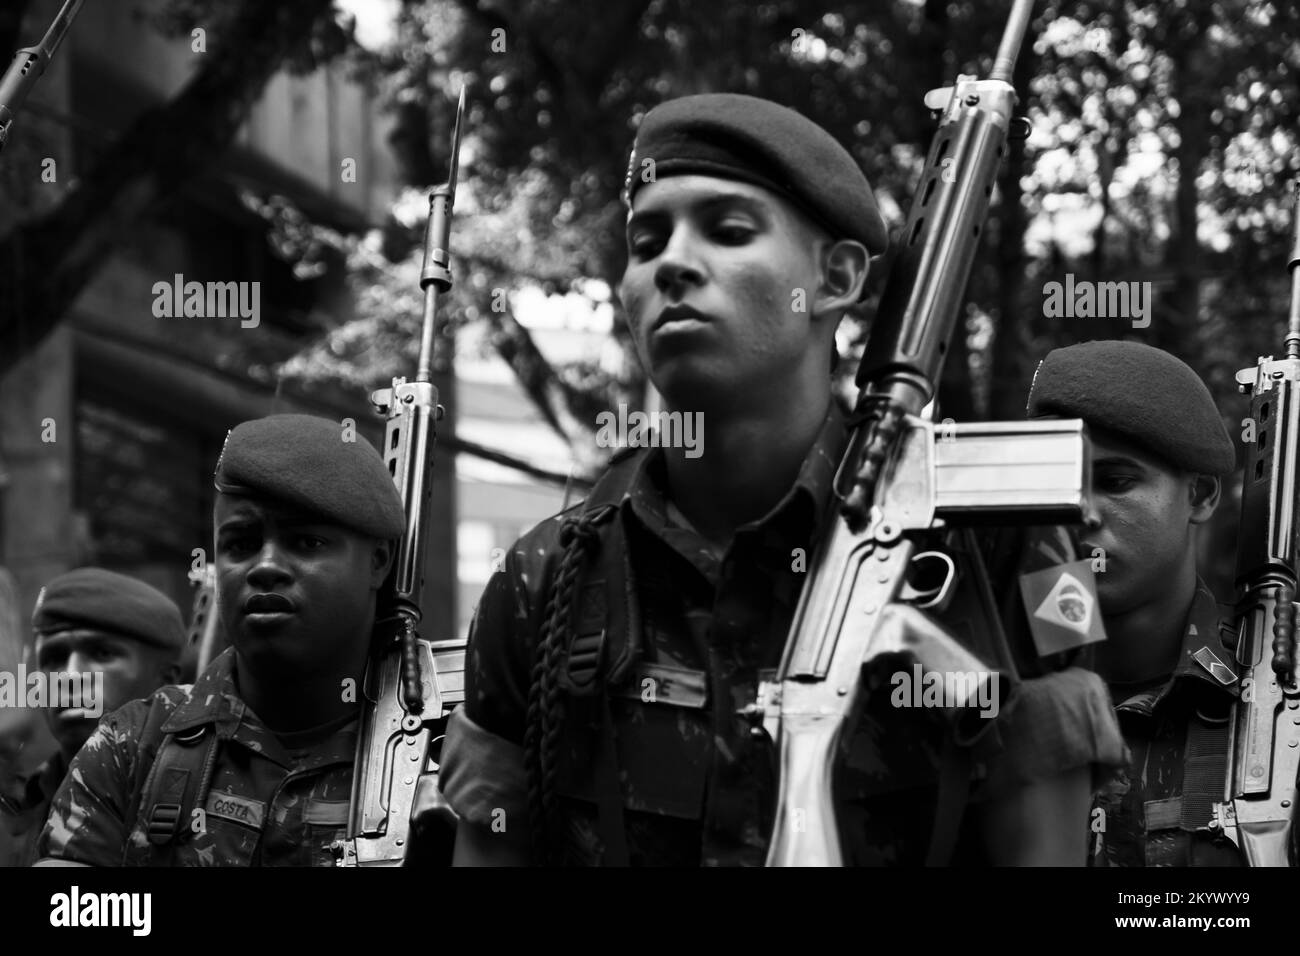 Salvador, Bahia, Brasile - 07 settembre 2016: Soldati dell'esercito marciano con fucili sulle loro spalle, il giorno dell'Indipendenza del Brasile nella città di Foto Stock